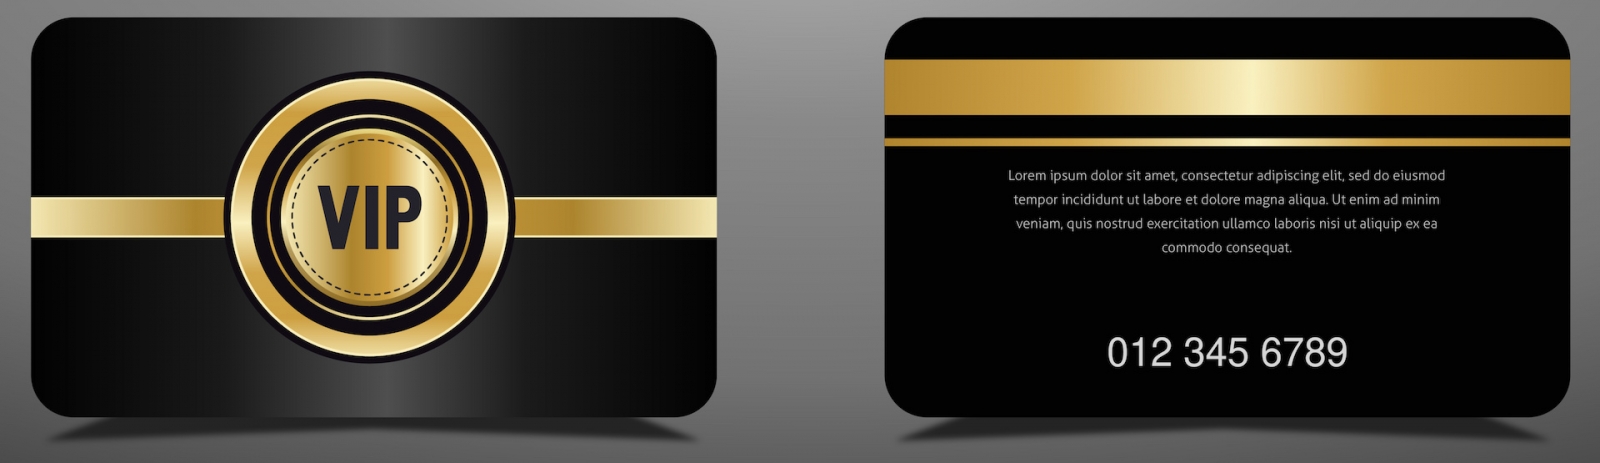 carta vip oro di lusso ed elegante sfondo nero, design di lusso per membri VIP.